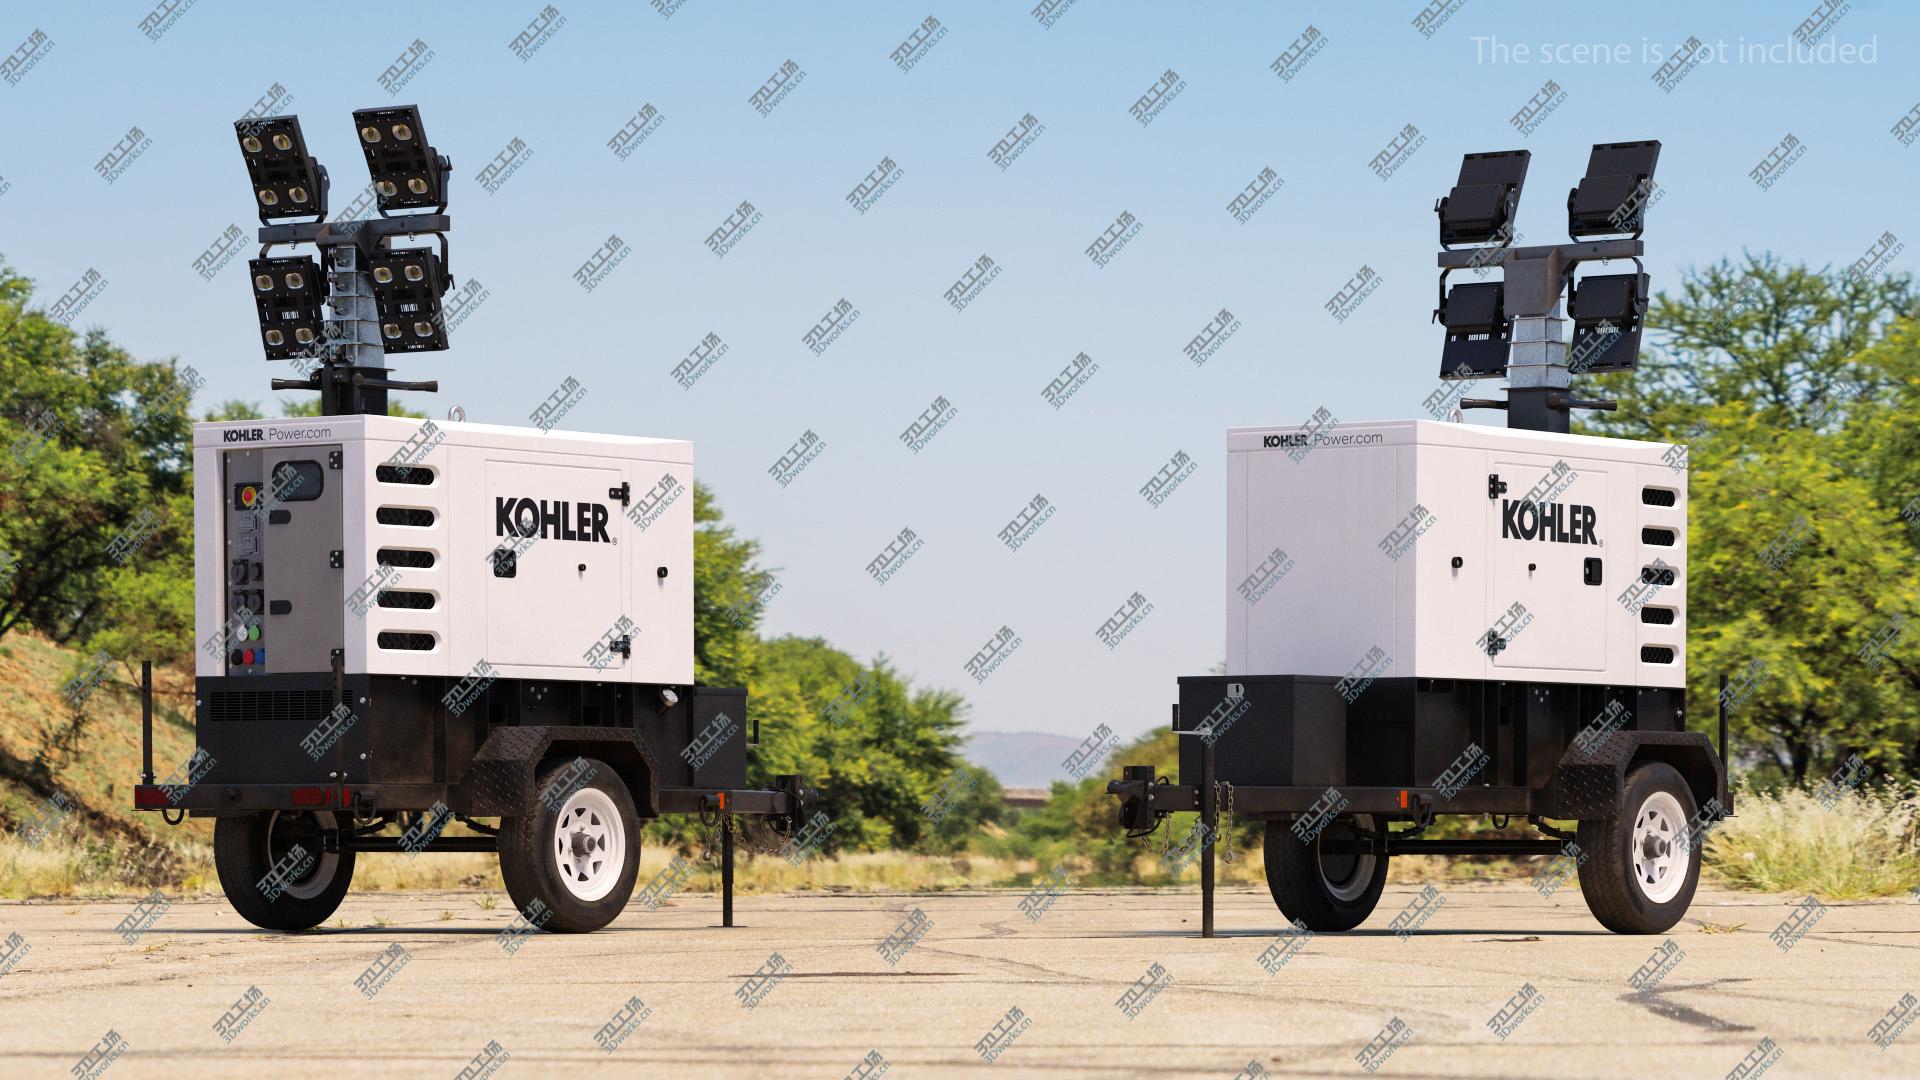 images/goods_img/2021040164/Kohler Mobile Generator 3D model/4.jpg